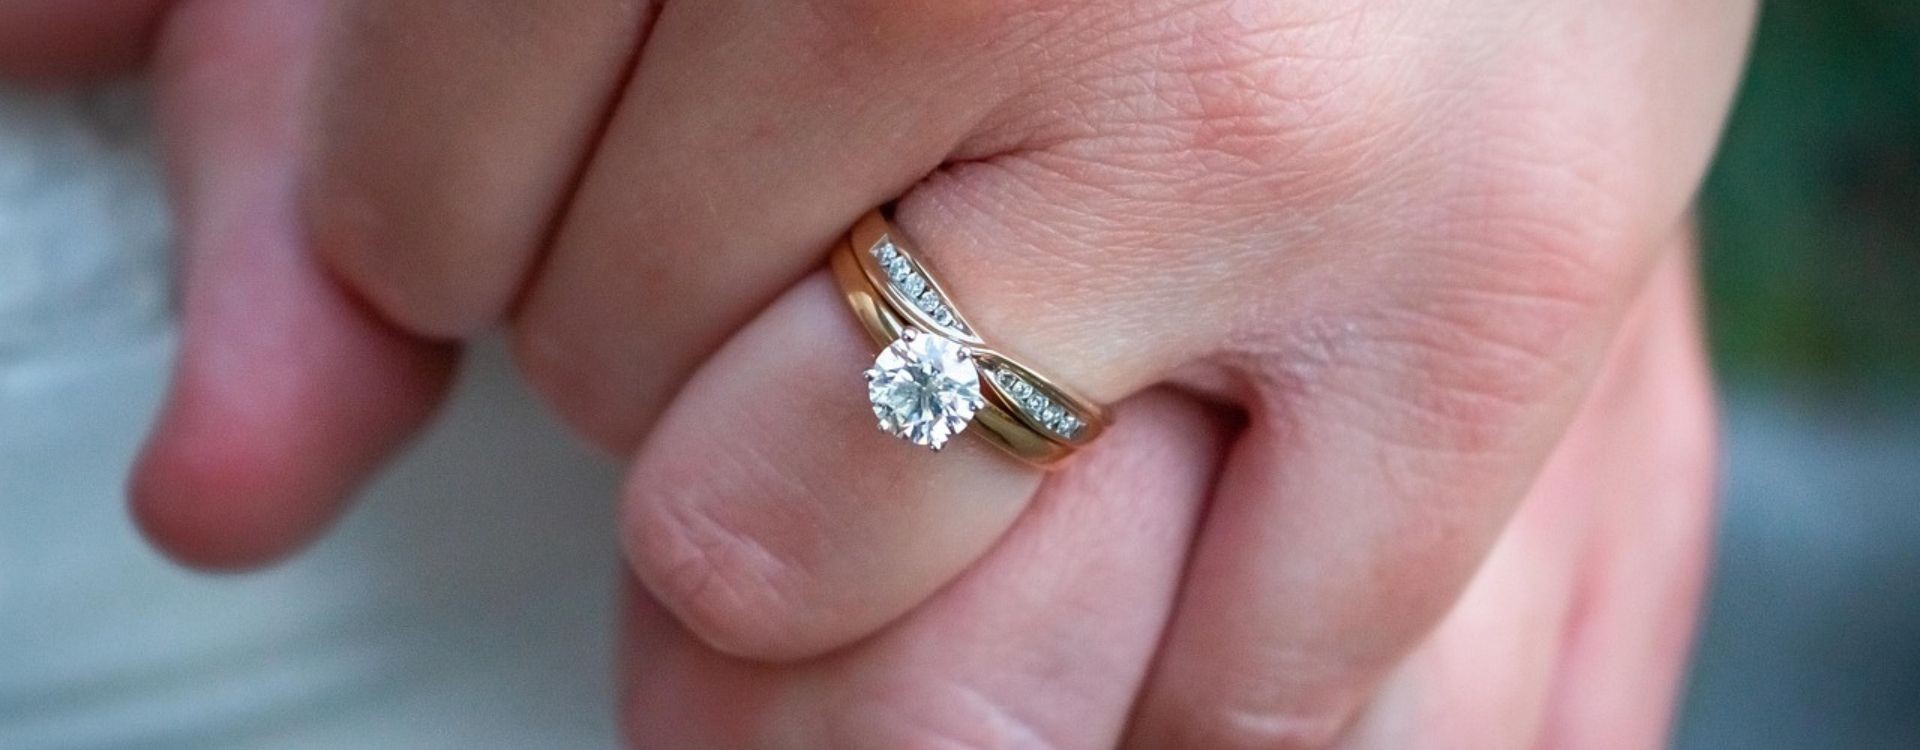 Qué tipos de anillos de compromiso hay?